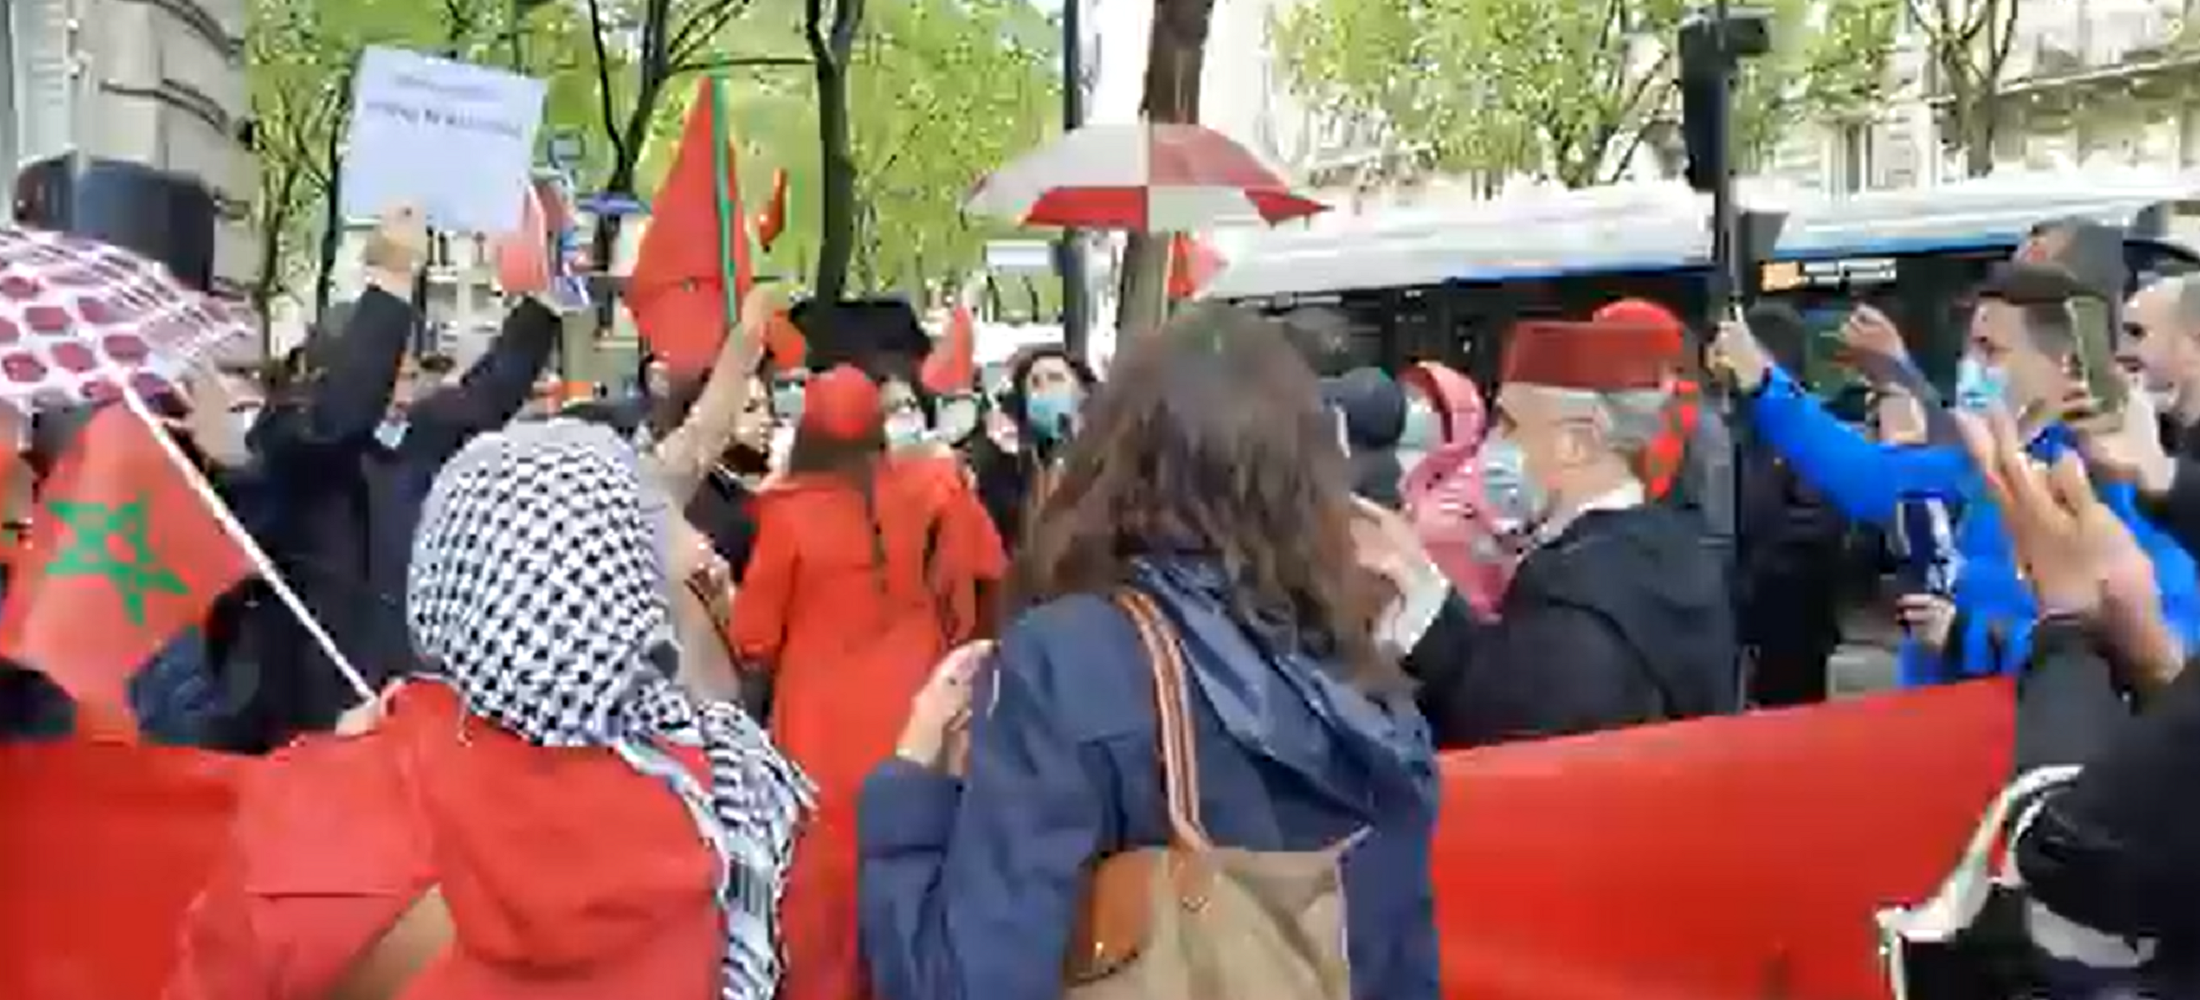 Manifestació de marroquins davant l'ambaixada espanyola a París